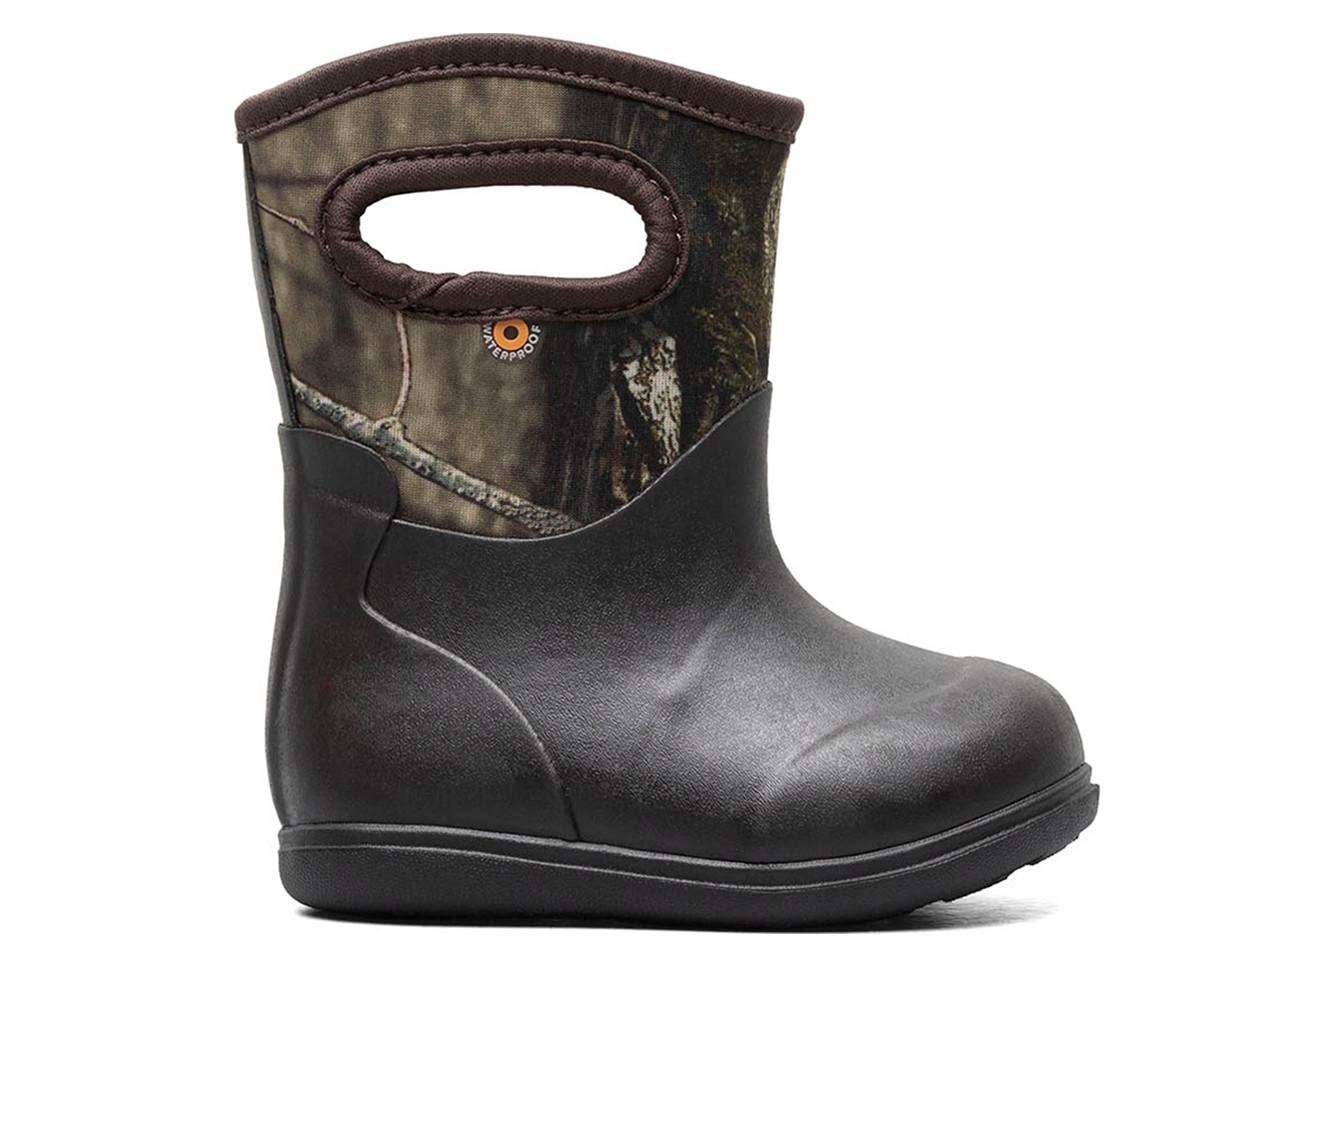 Boys' Bogs Footwear Toddler Classic Mossy Oak Rain Boots